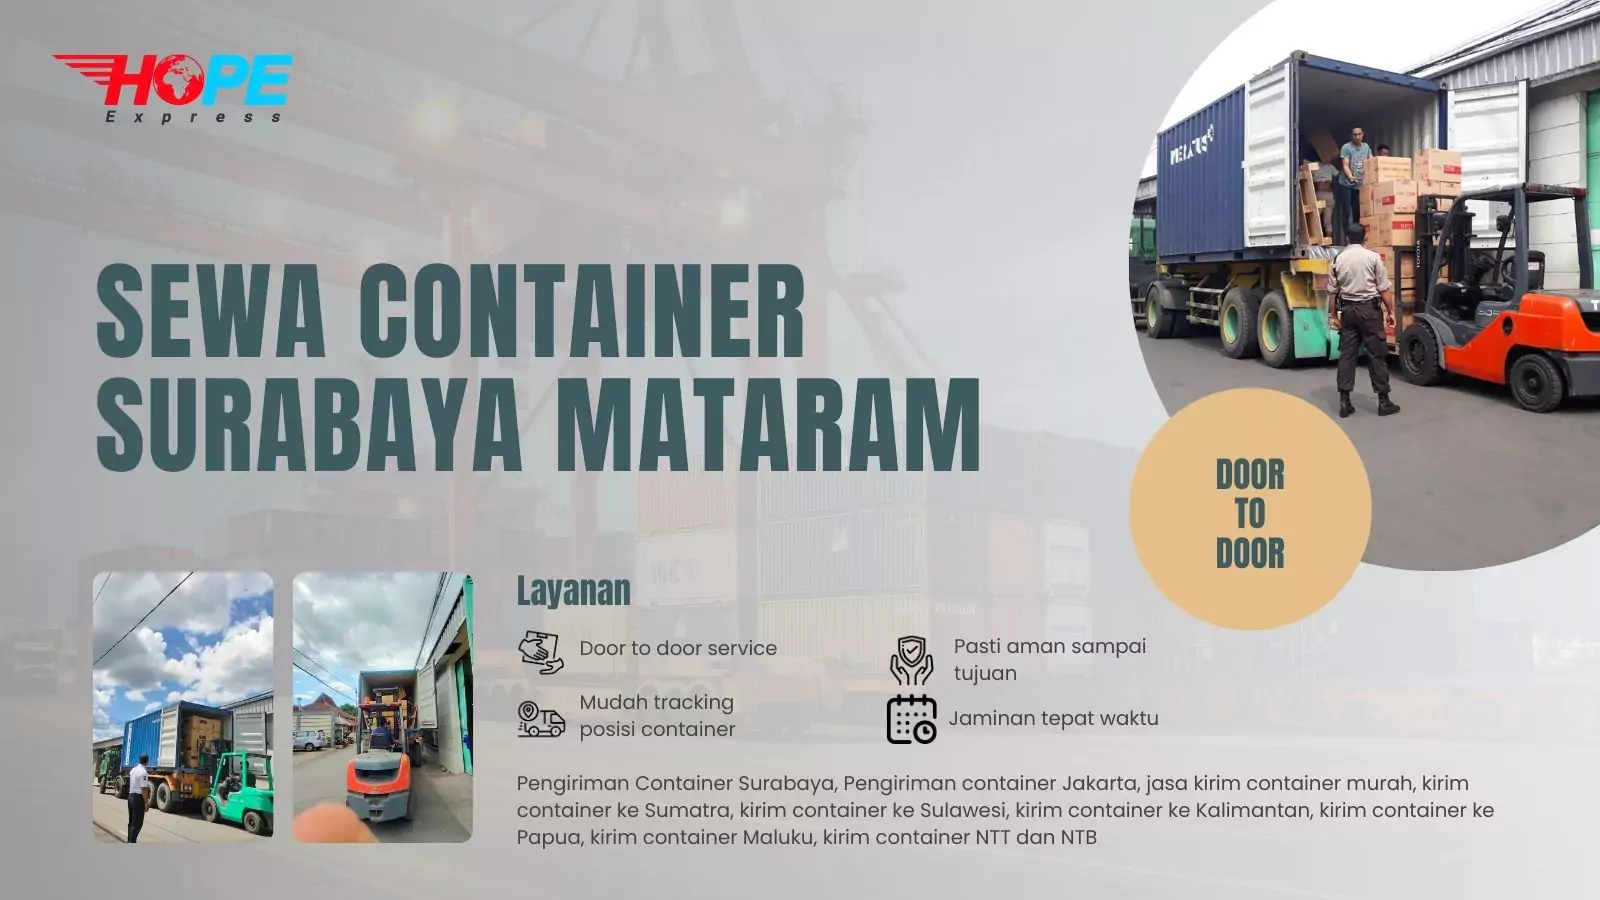 Sewa Container Surabaya Mataram